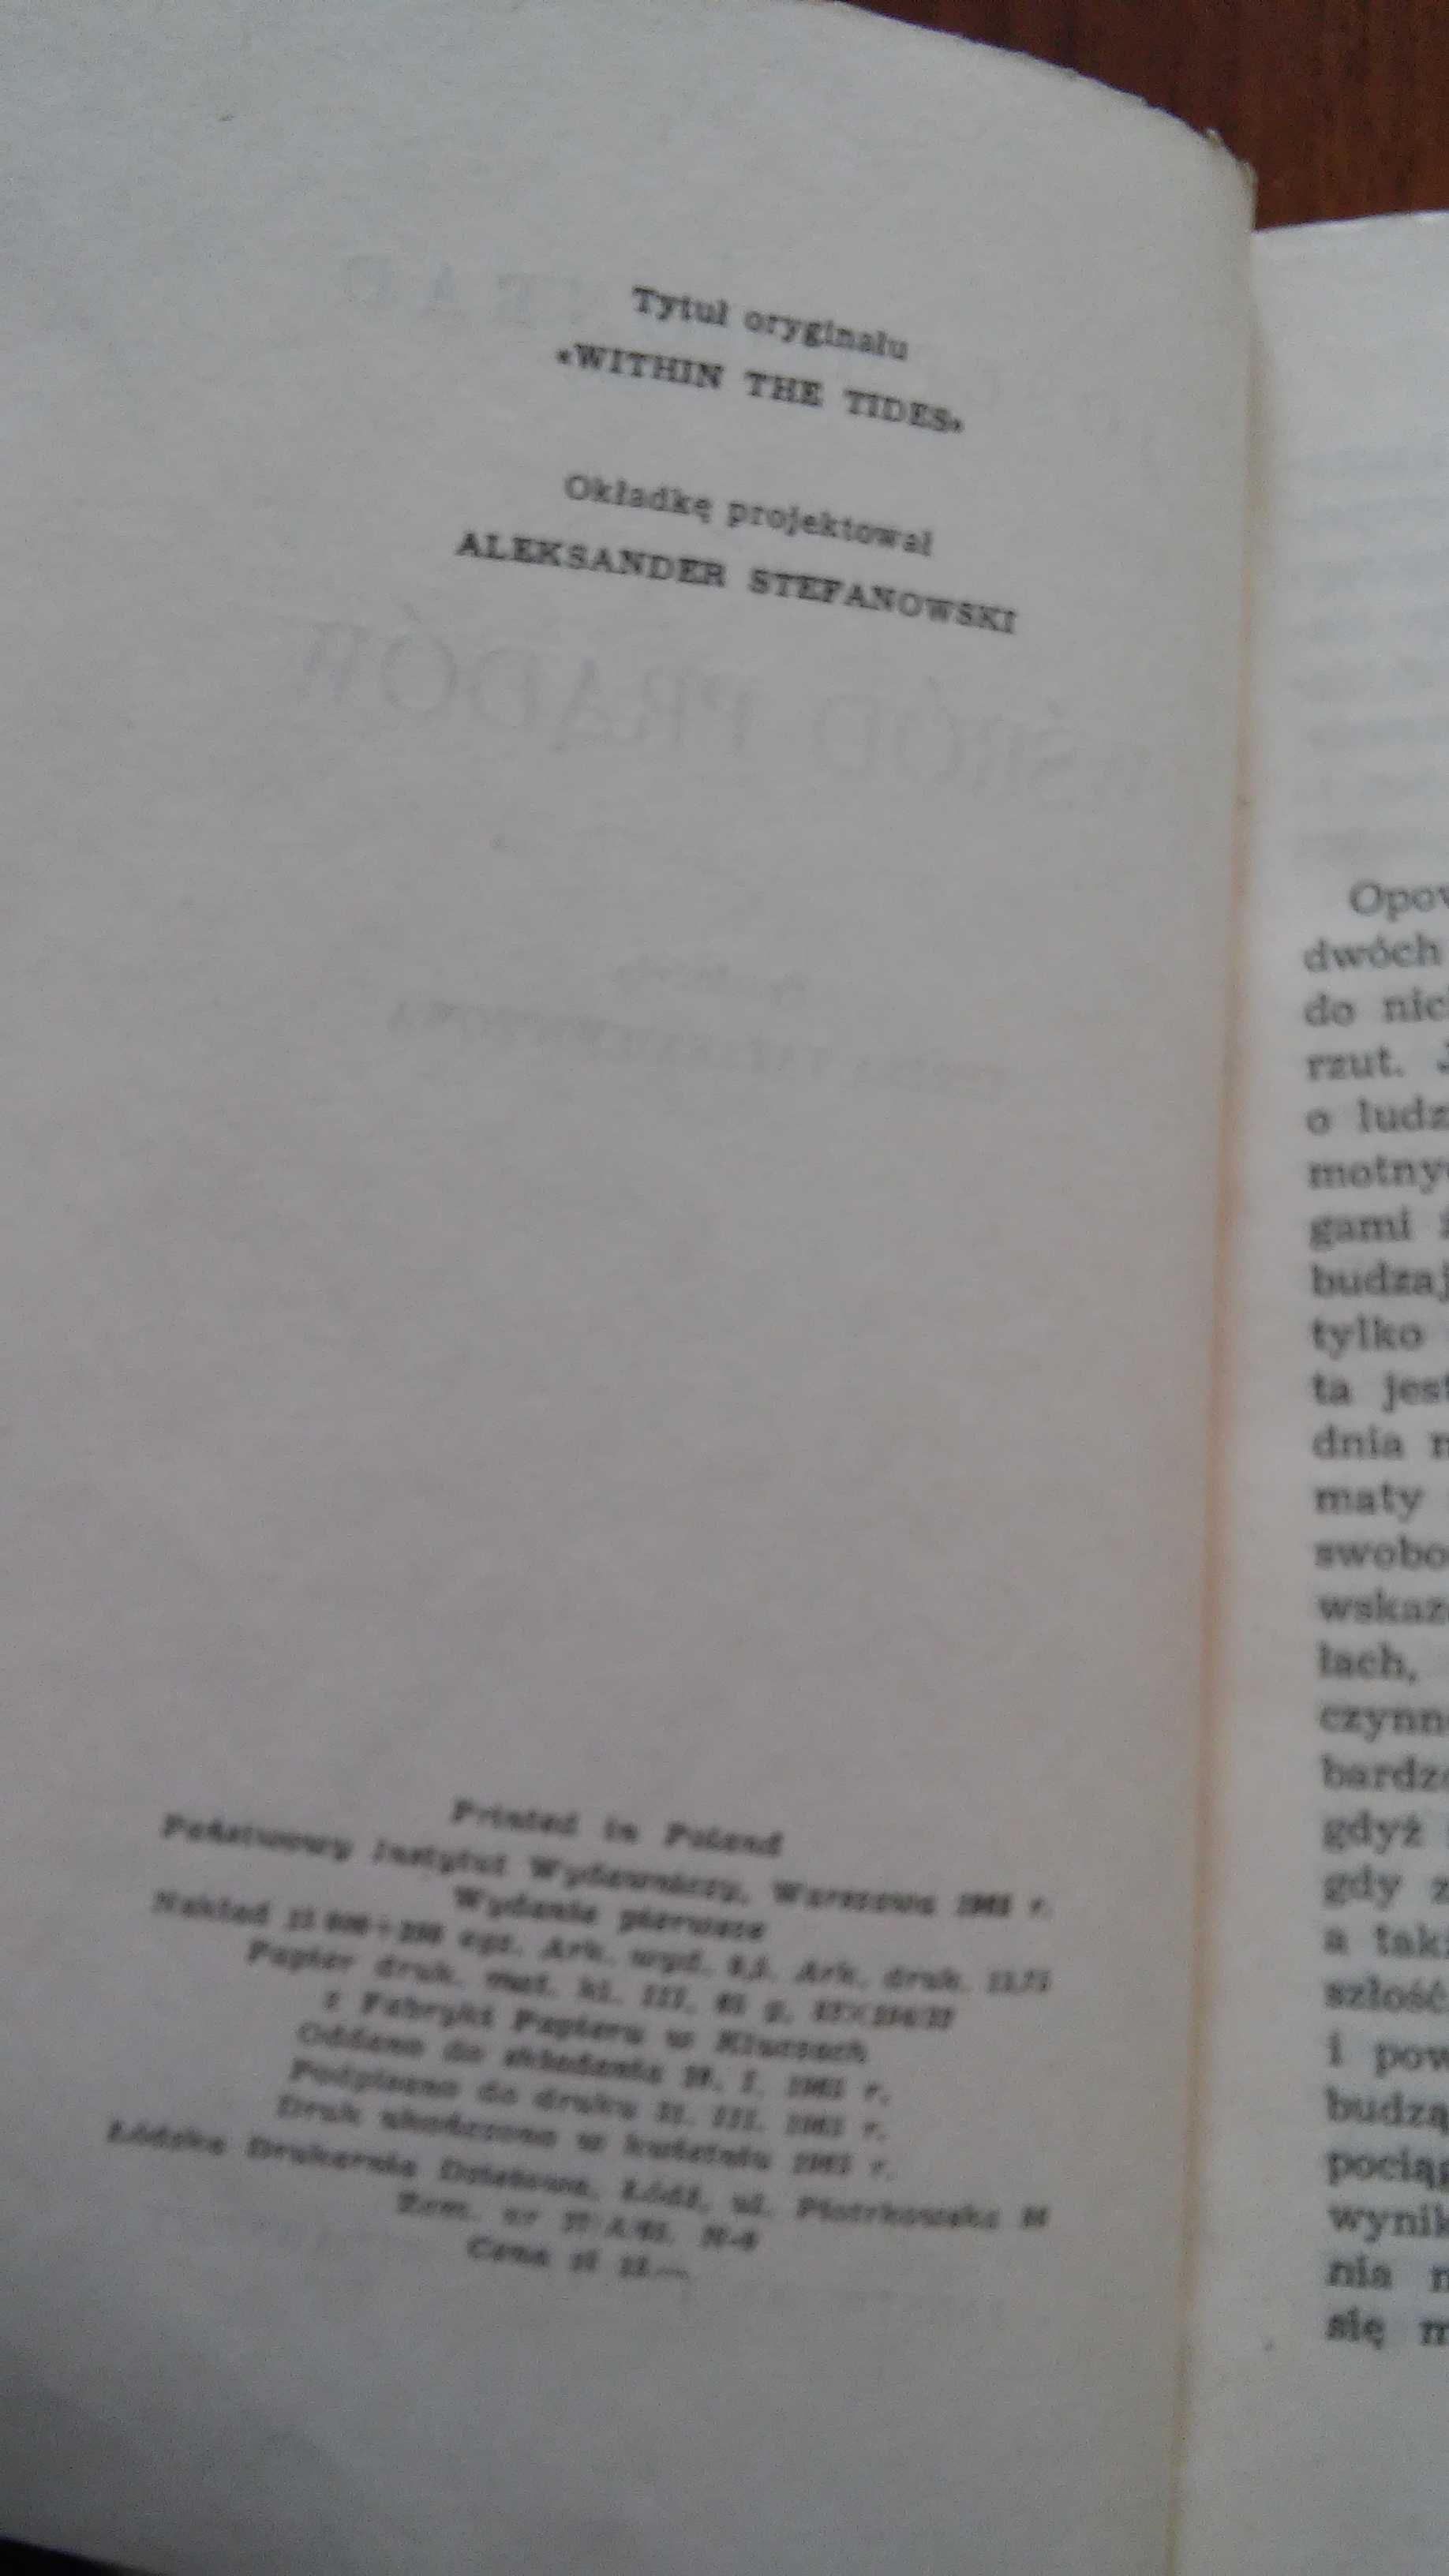 Joseph Conrad Wśród prądów. Wydanie pierwsze. 1965 r.